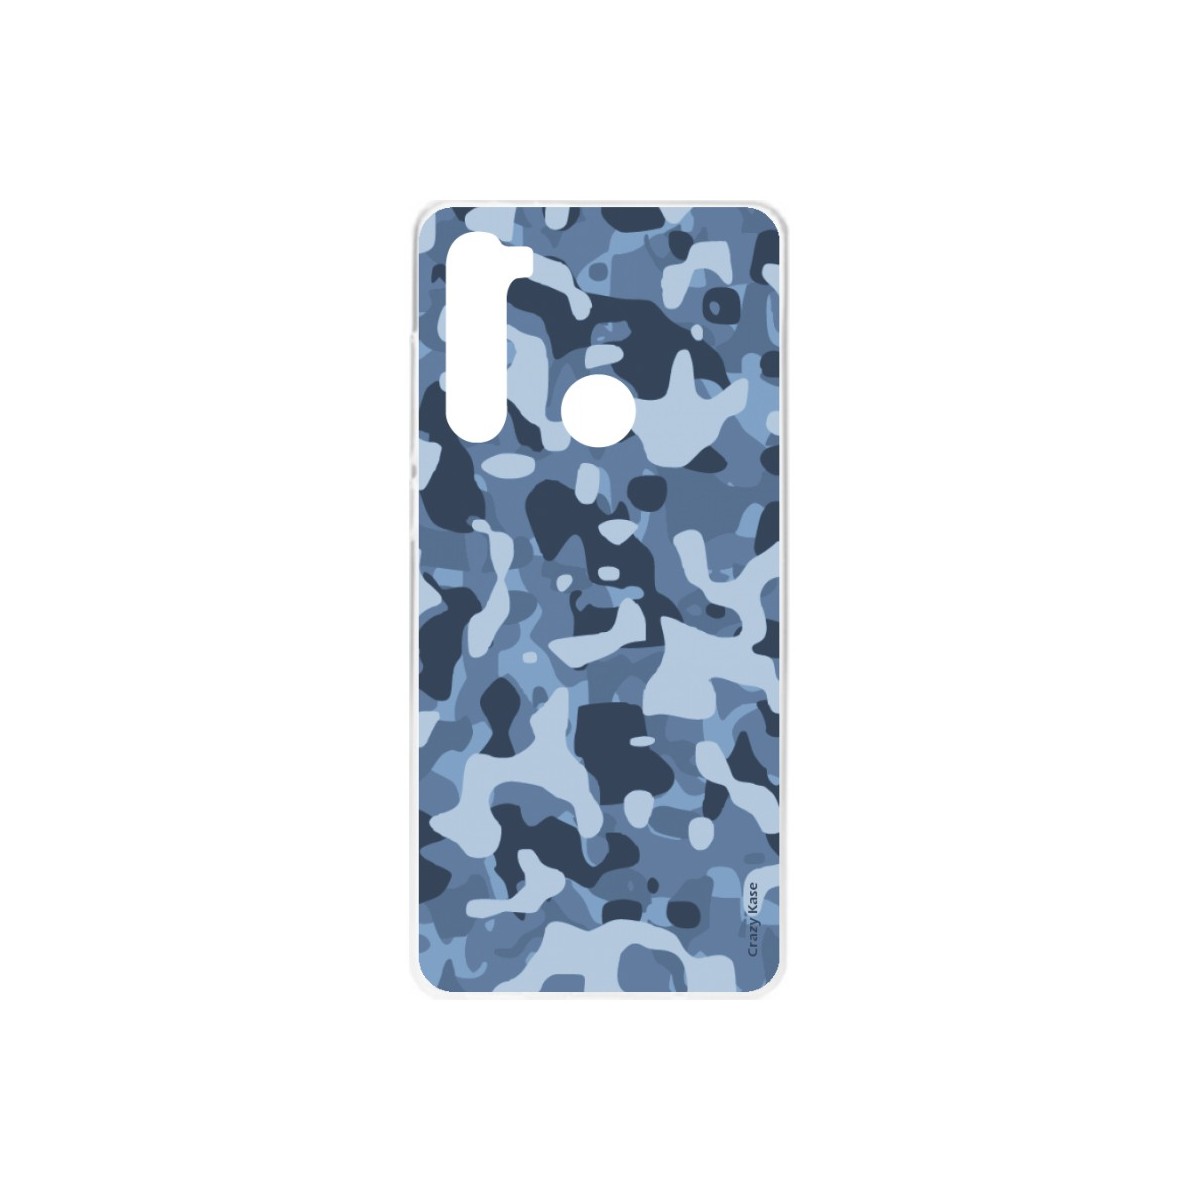 Coque Xiaomi Redmi Note 8 souple Camouflage militaire bleu Crazy Kase